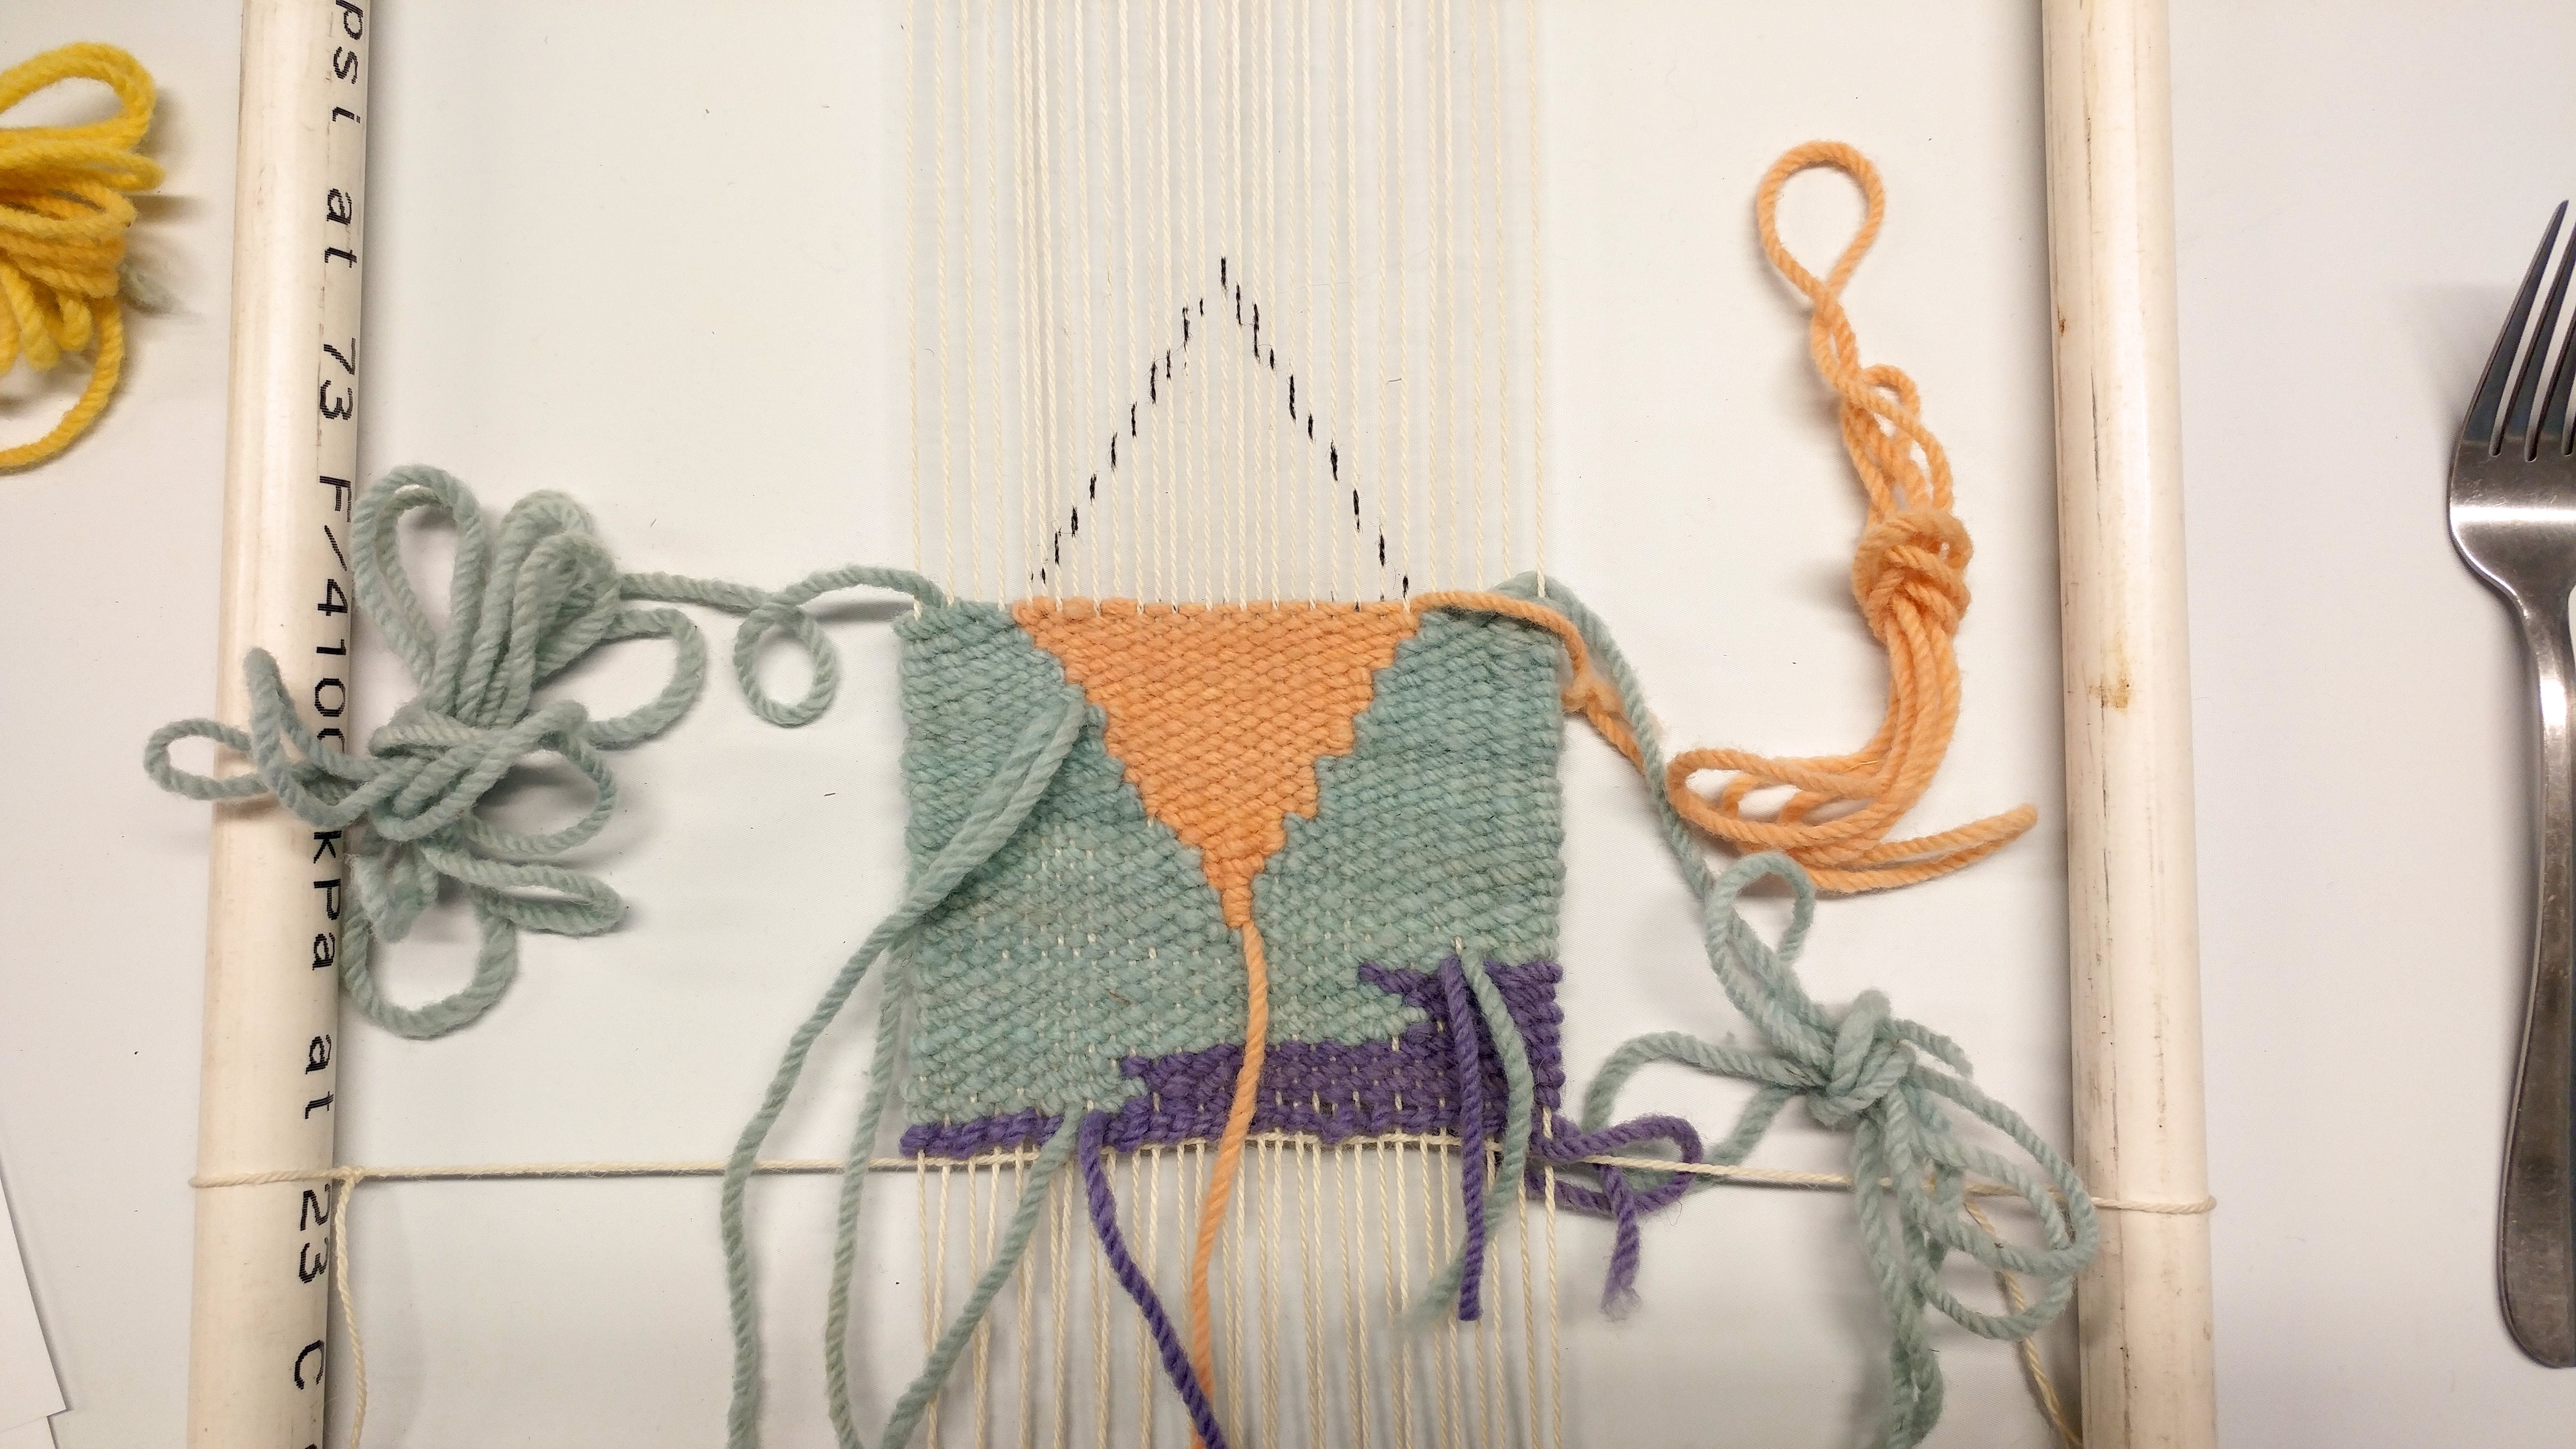 Tapestry weaving class - https://www.kimwerker.com/blog